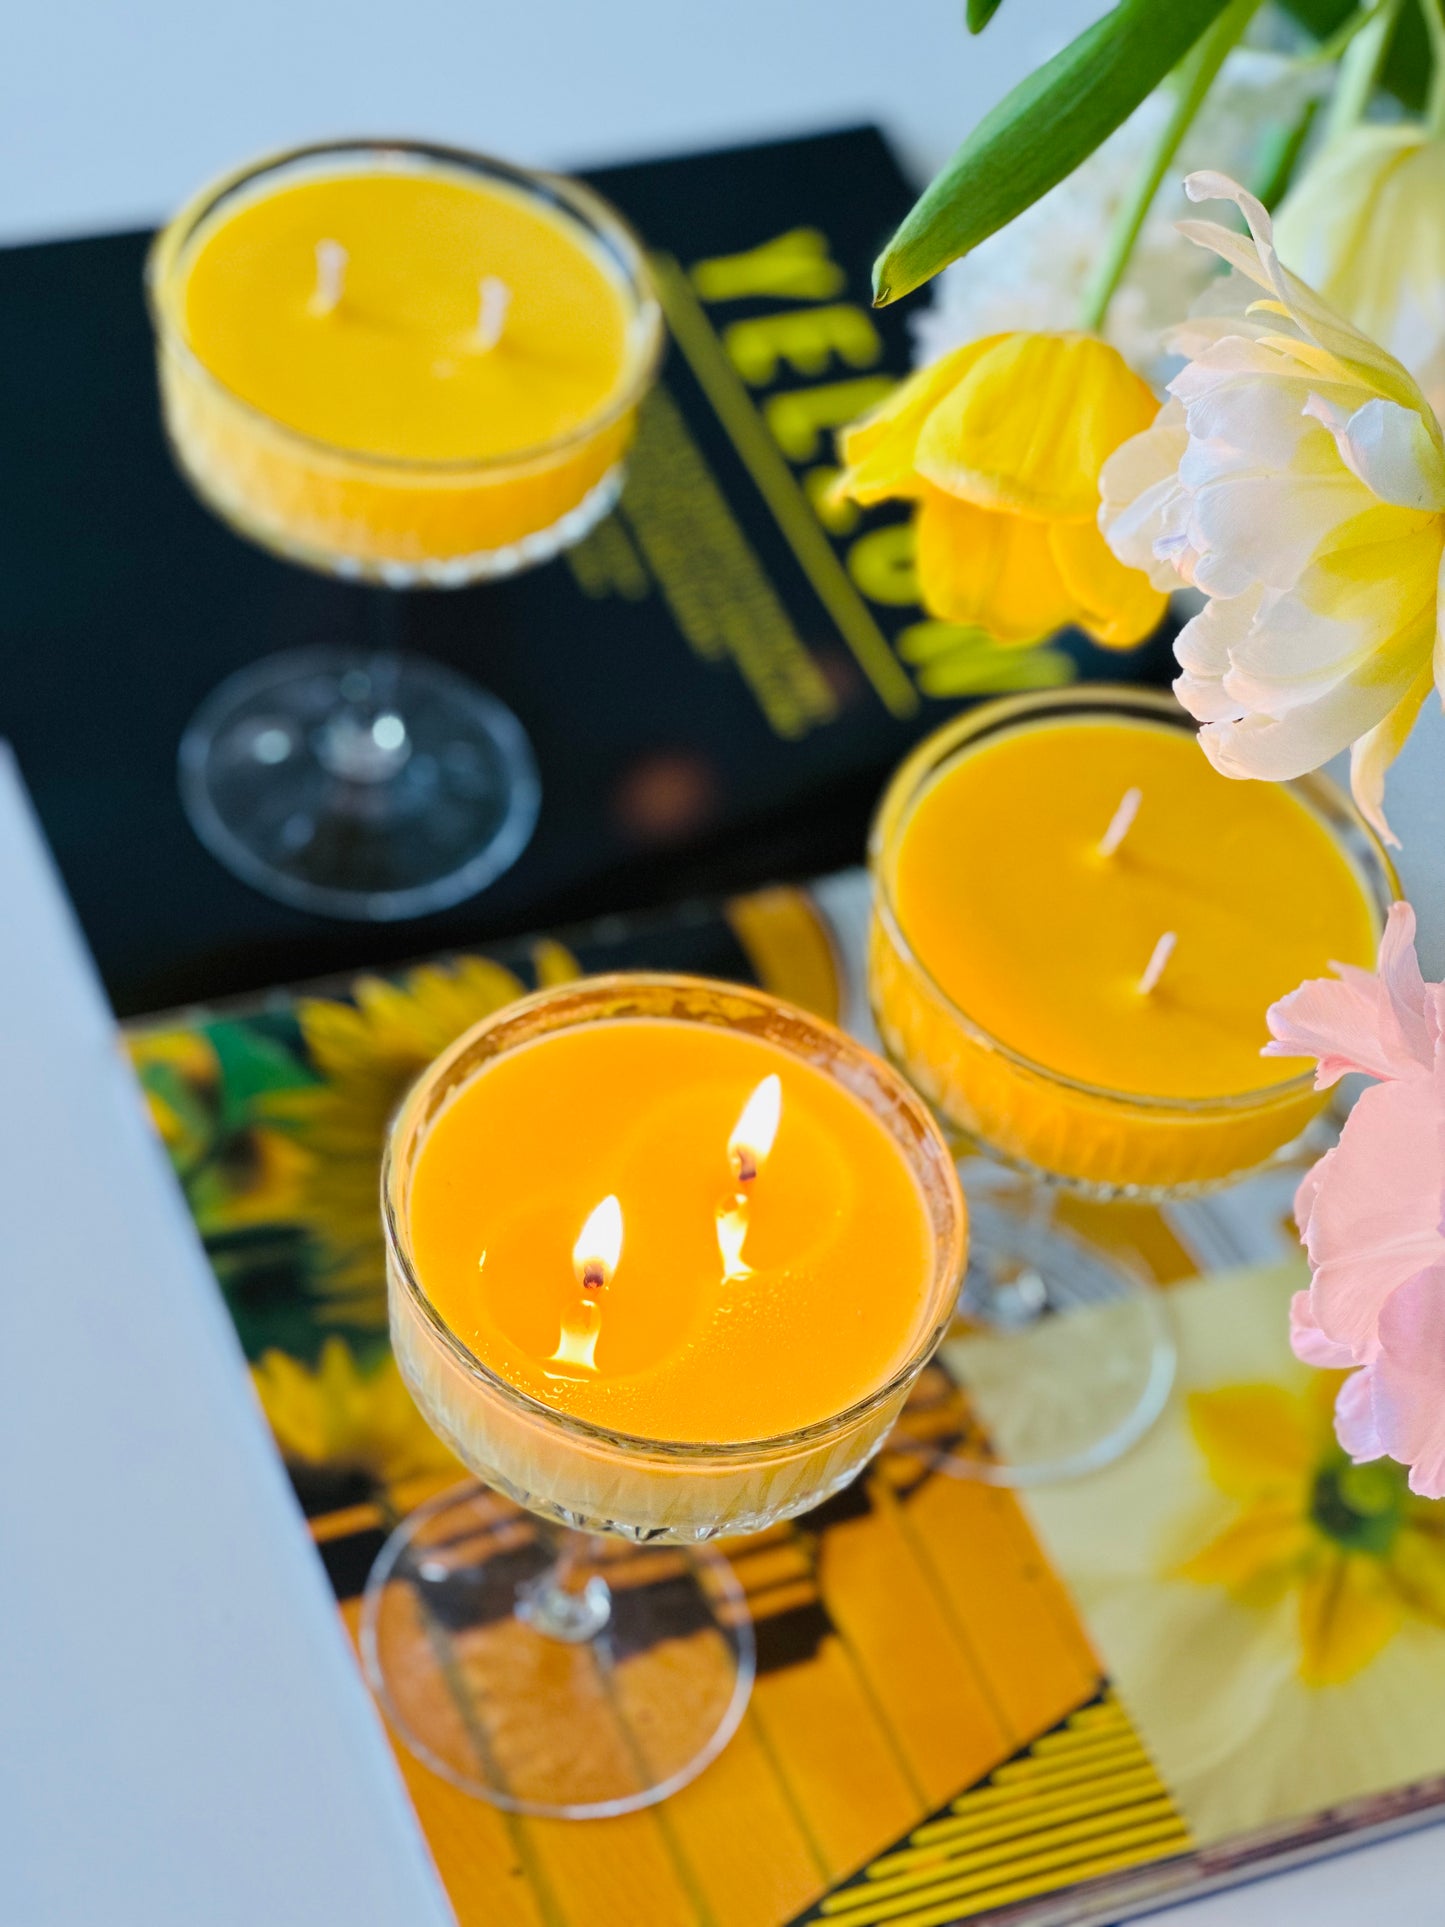 Dabīgā sojas vaska svece “Limoncello” aromāts, smalkā franču stikla glāzē.